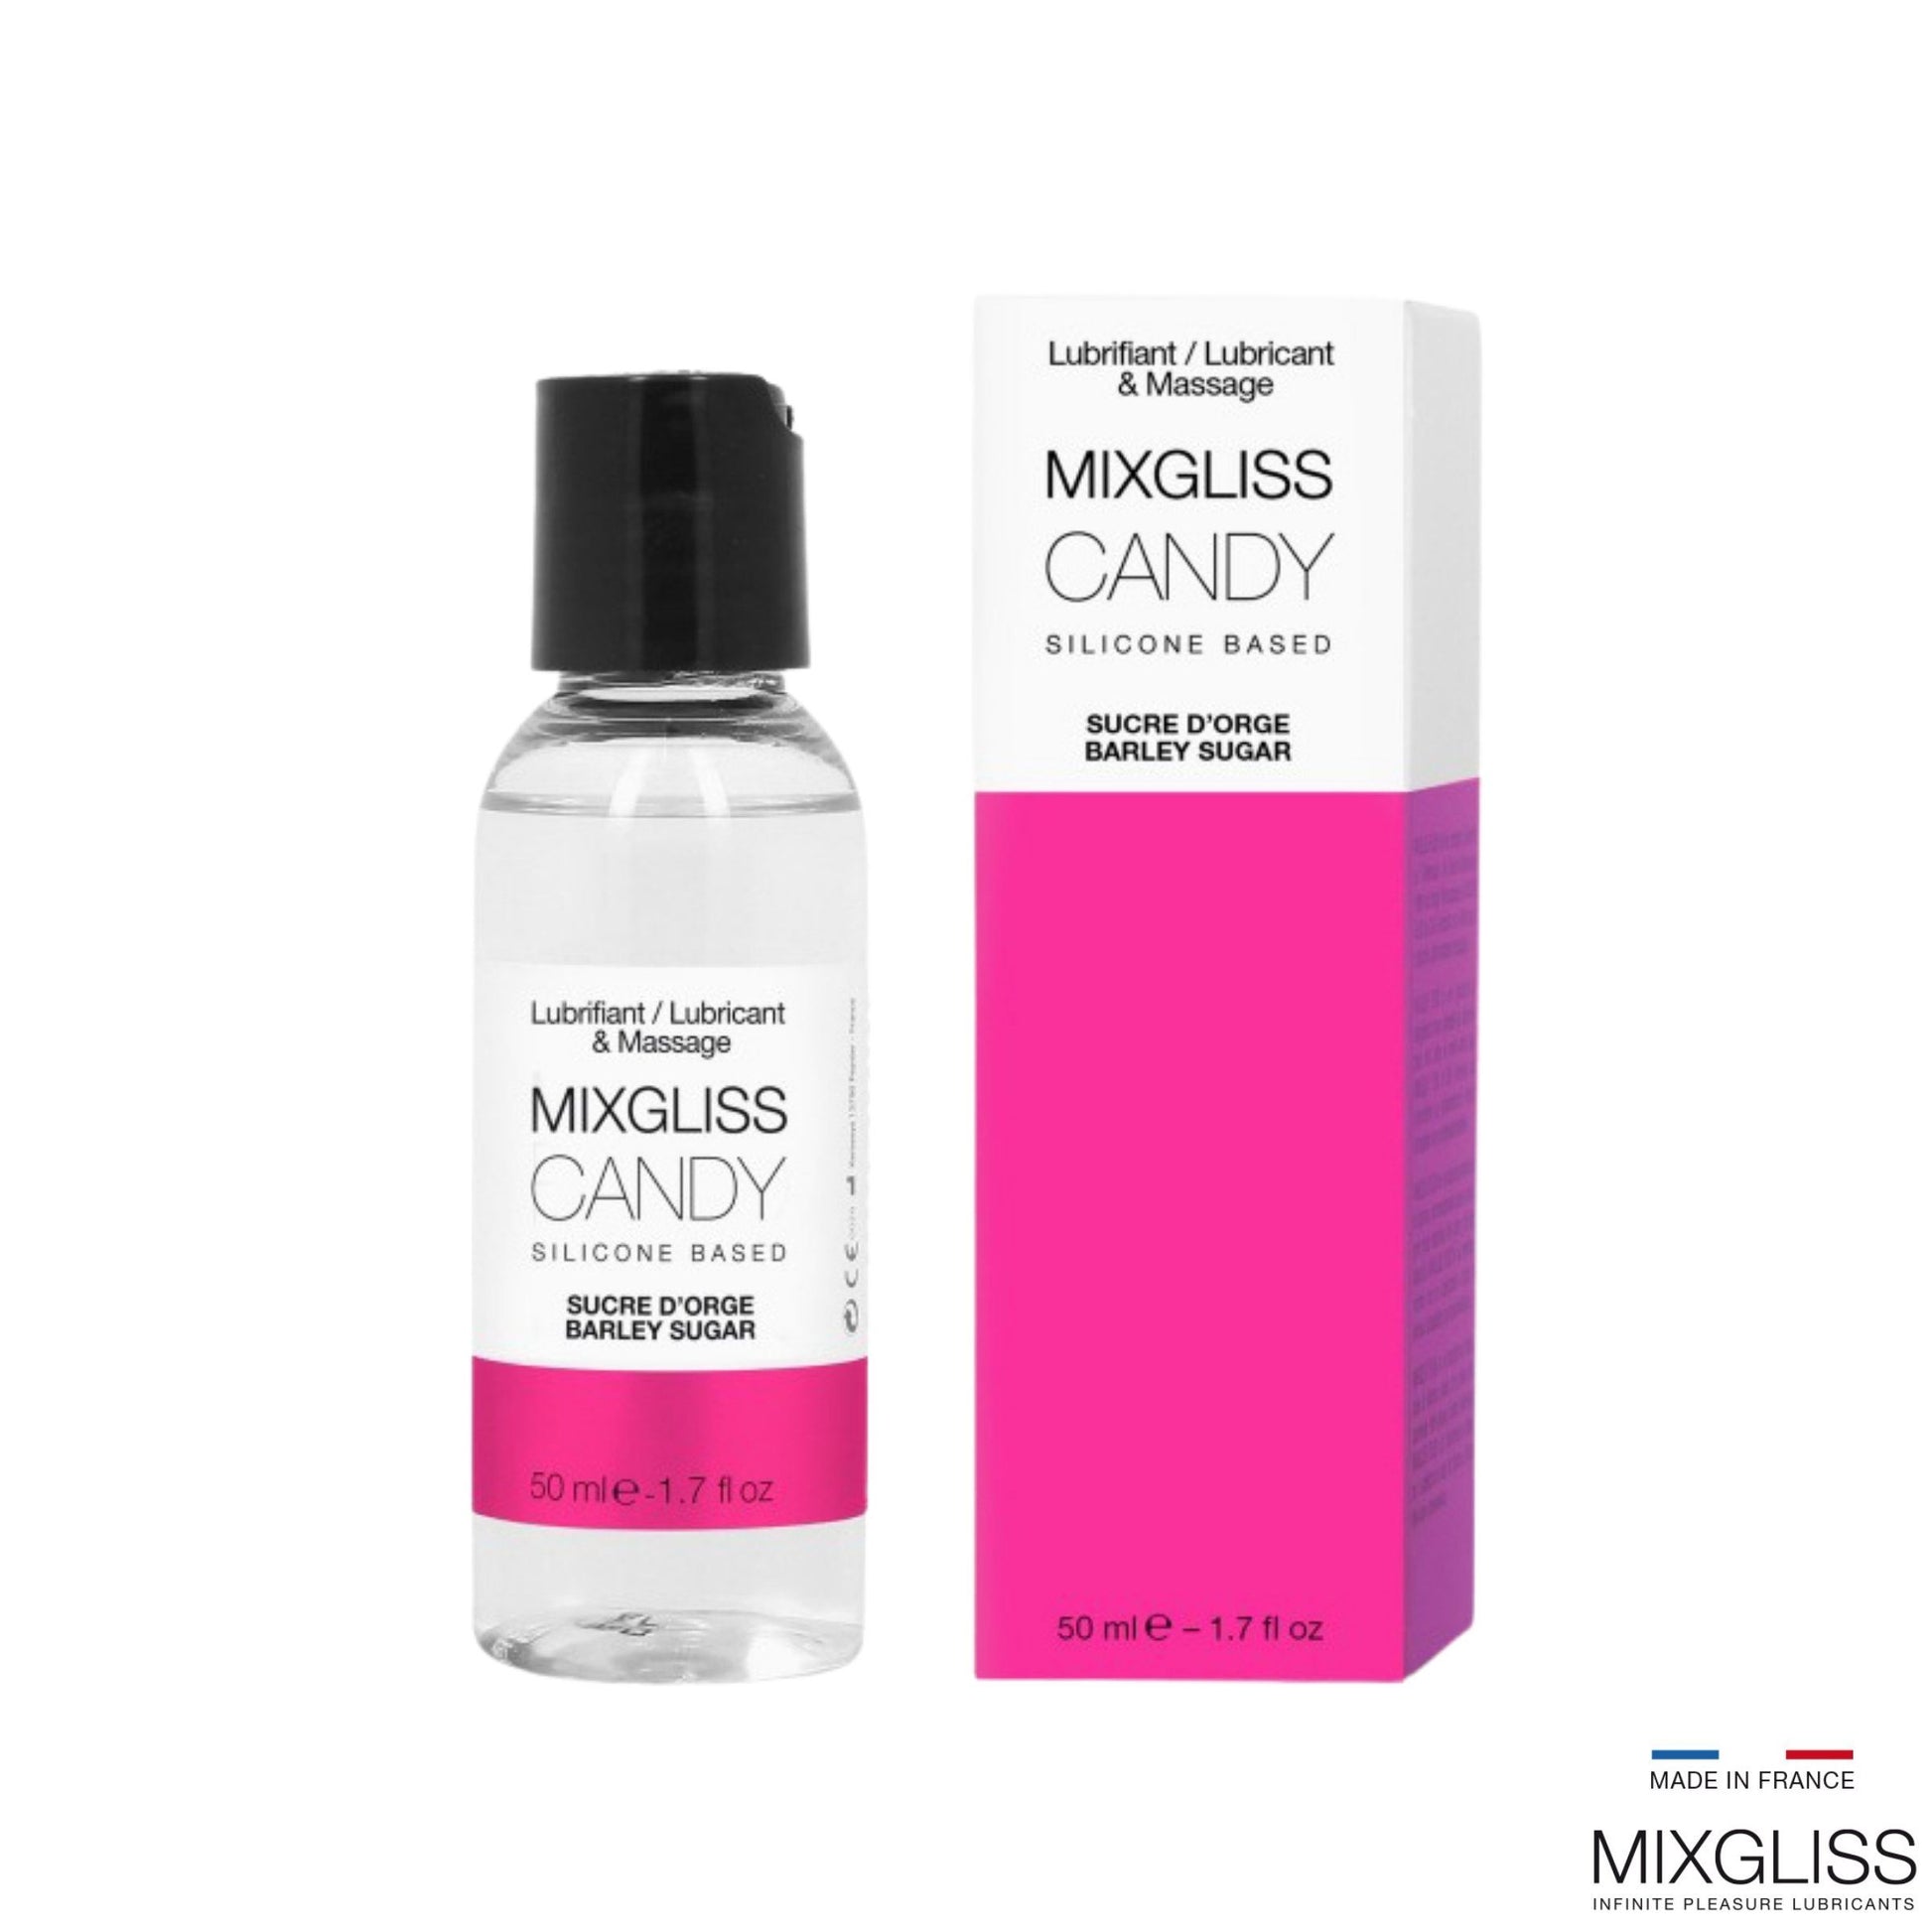 MIXGLISS Candy 香甜麥芽糖香調 2 合 1 矽性按摩潤滑液 50 毫升 潤滑液 購買